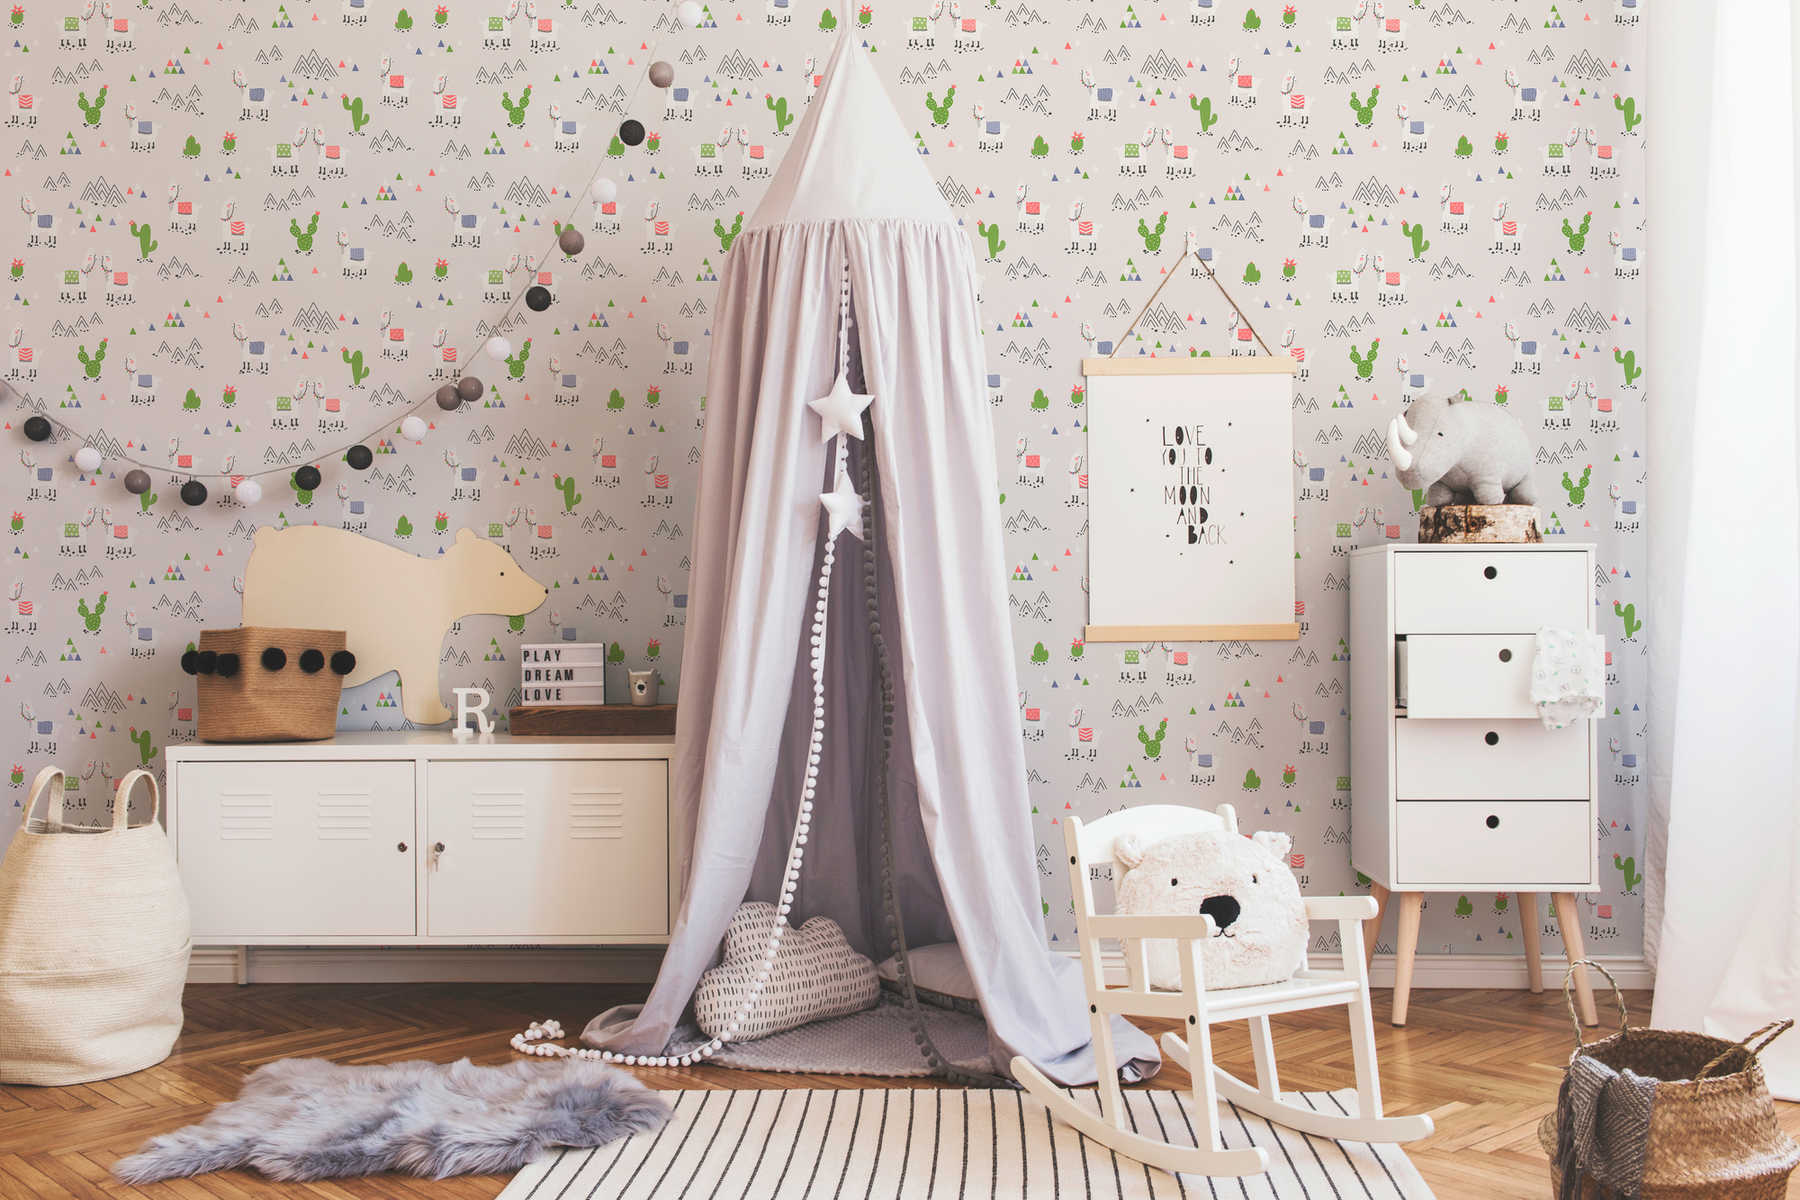             Kinderkamer behang lama kleurrijk patroon & textiel look- Grijs,
        